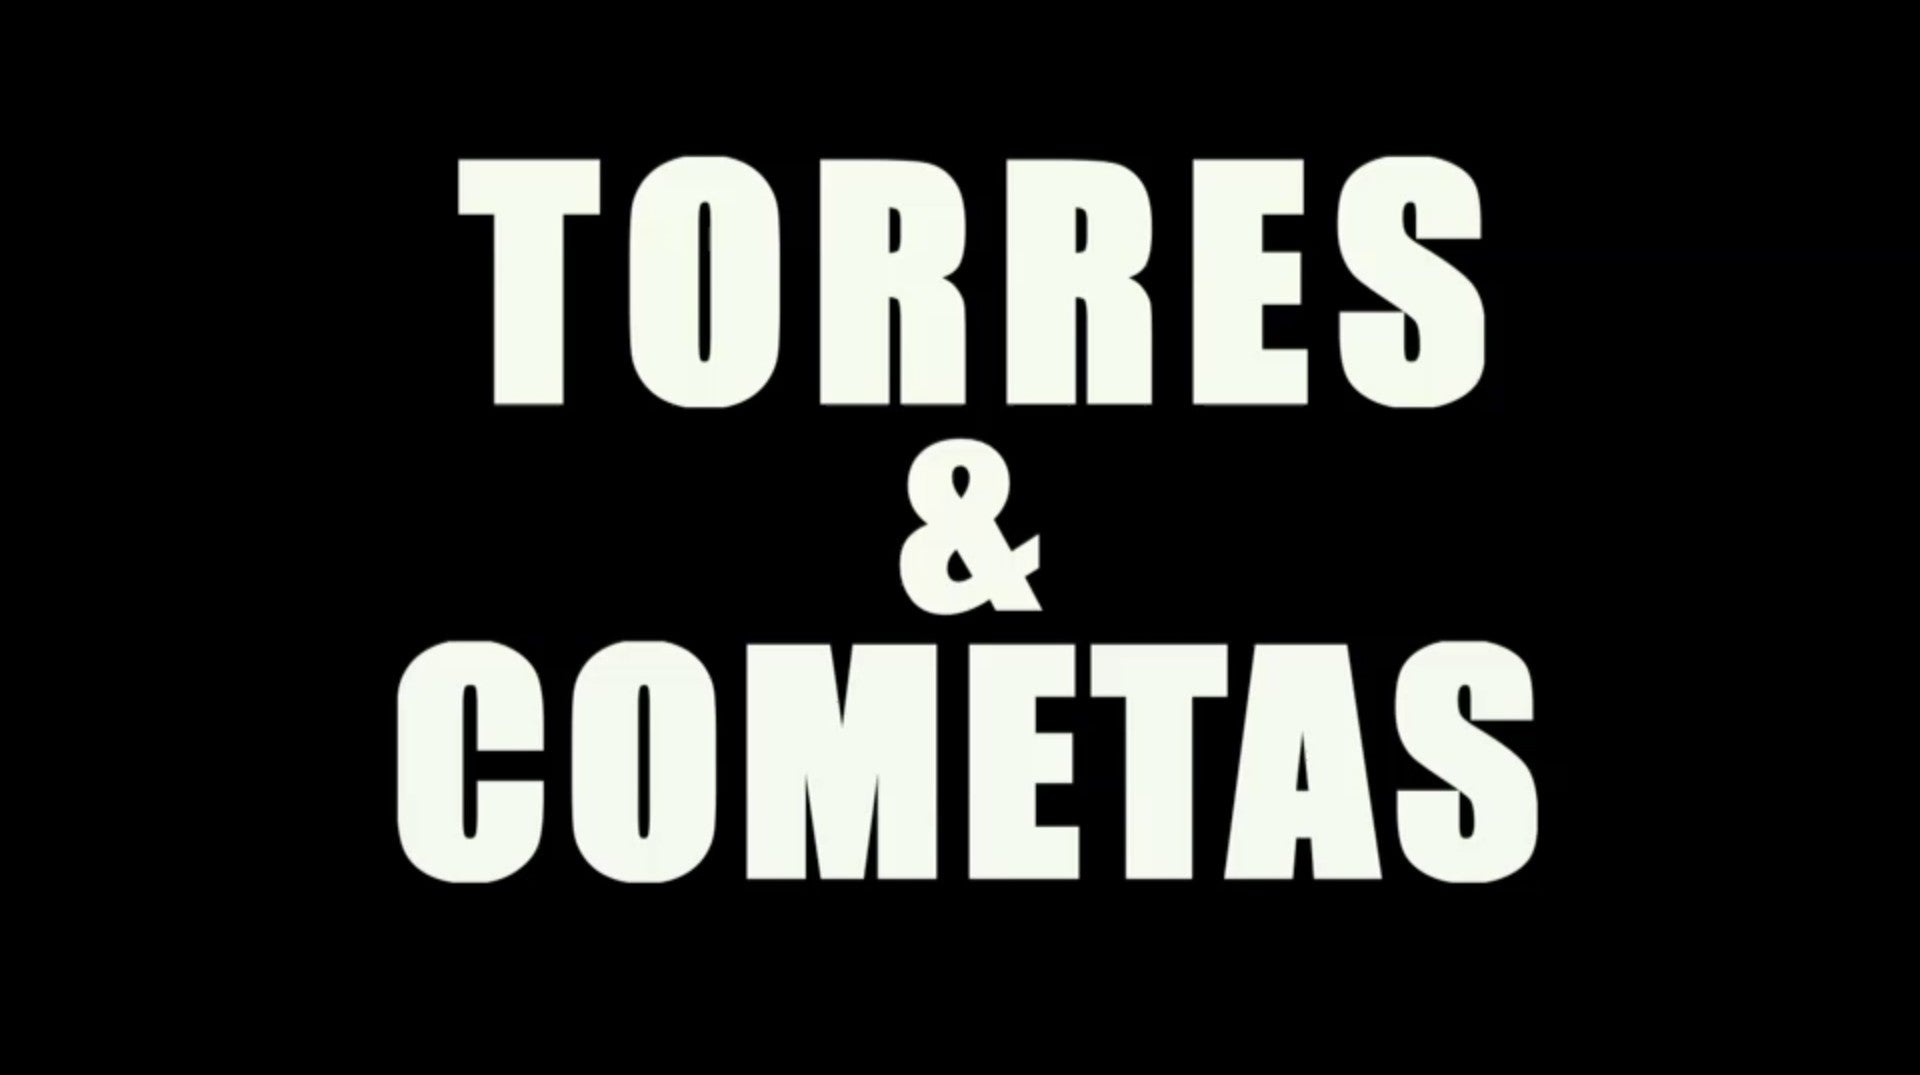 Torres & Cometas